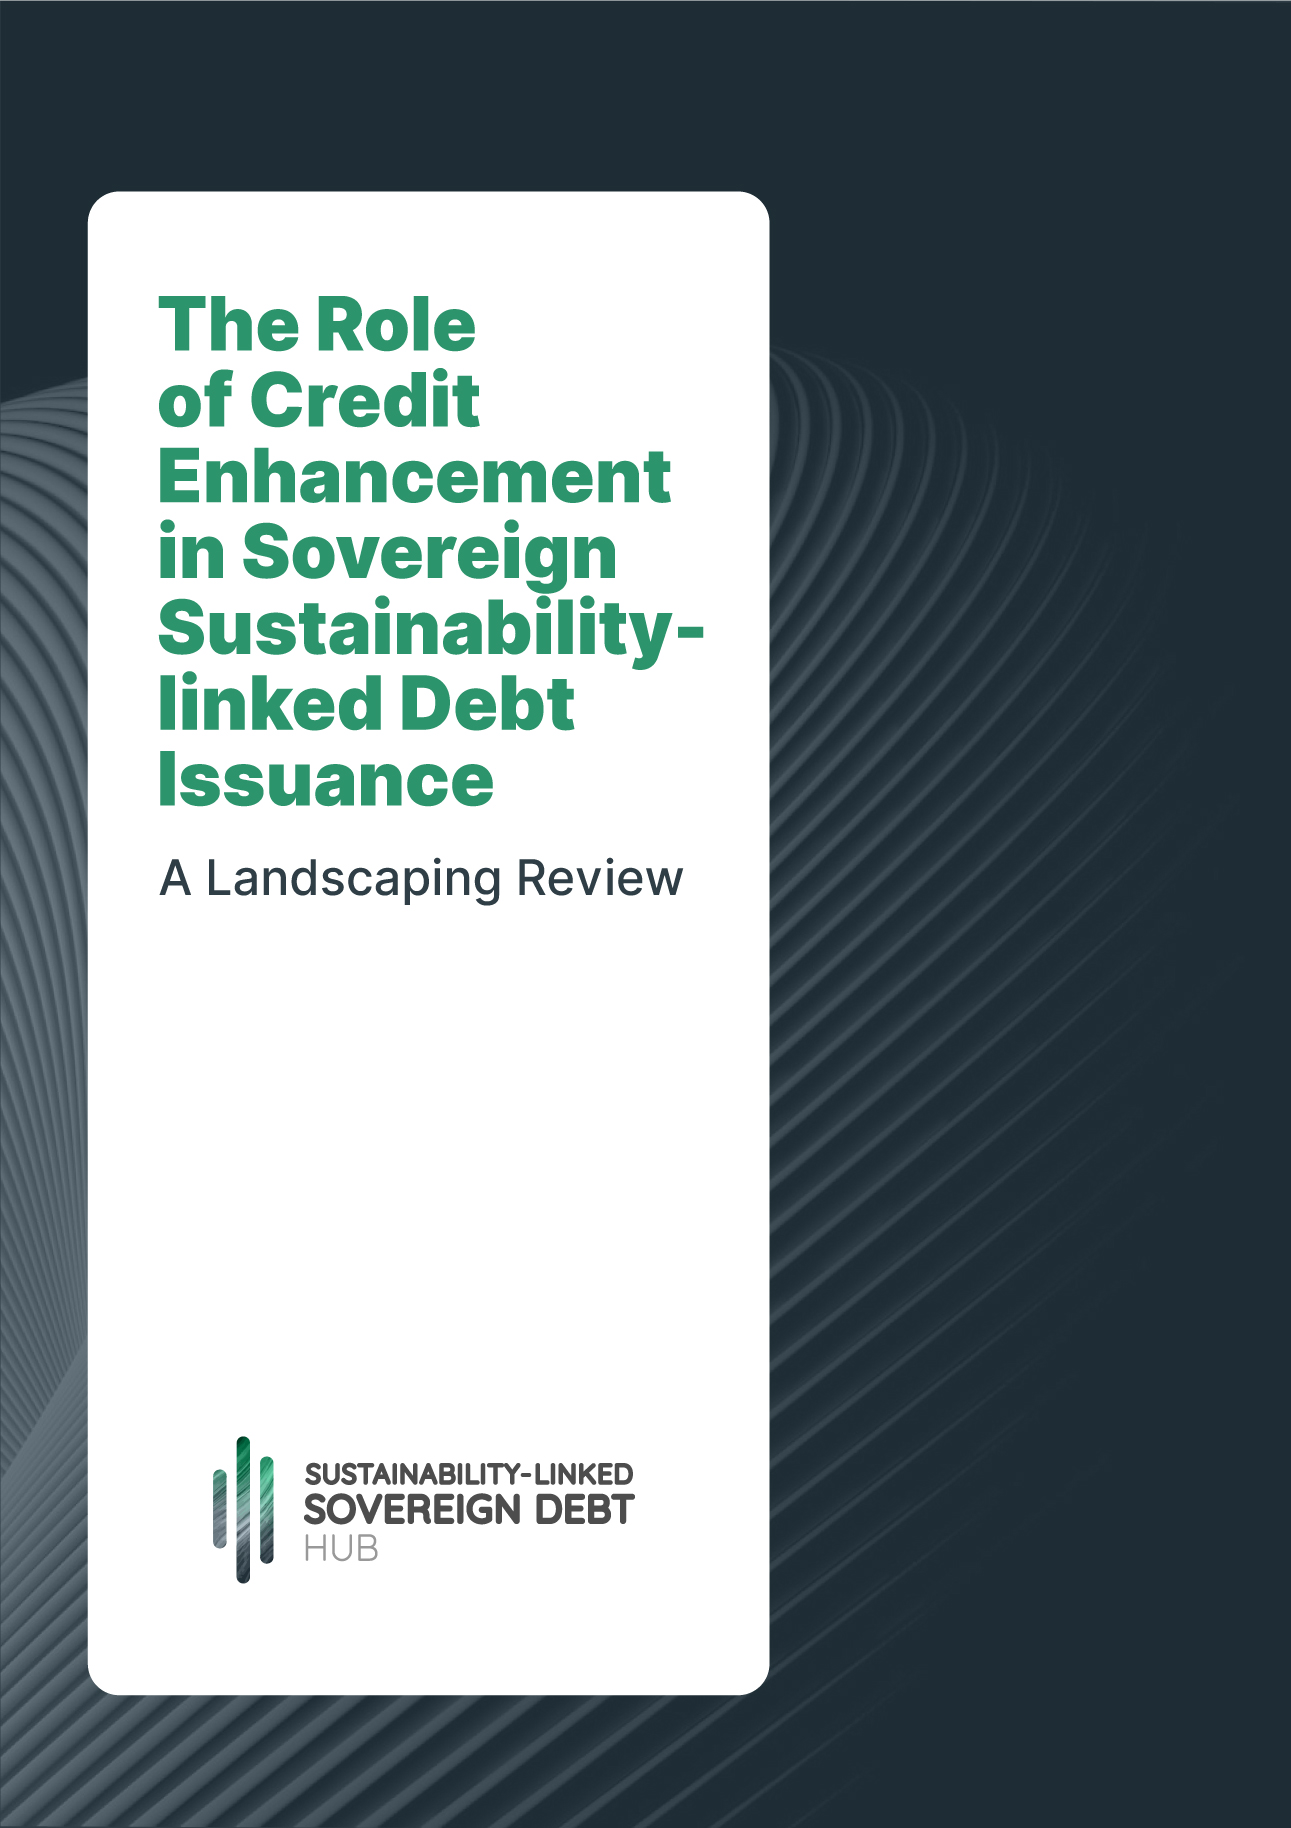 Le rôle du rehaussement de crédit dans l'émission de dette souveraine liée au développement durable